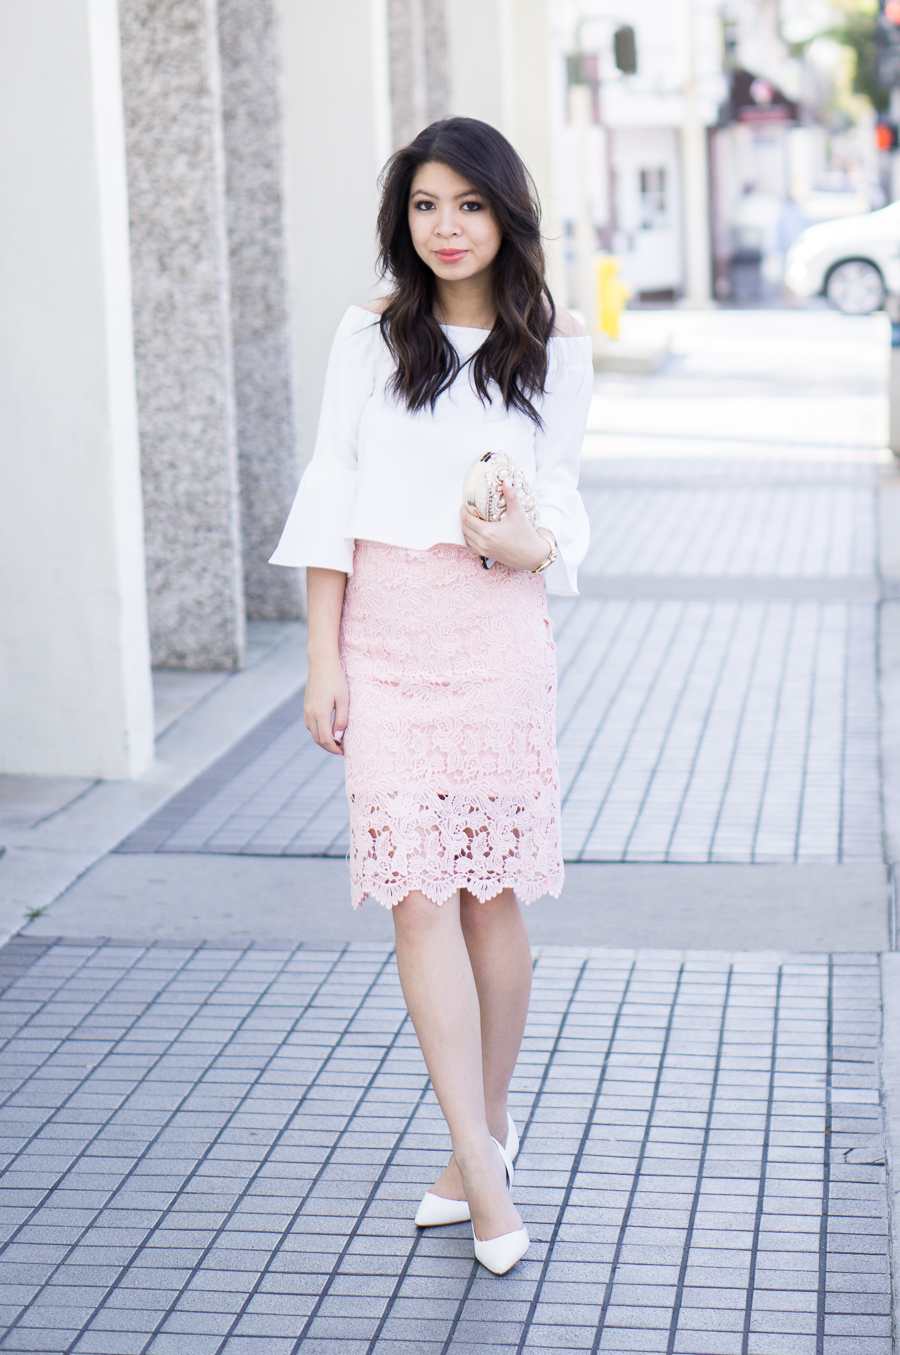 Lace Pencil Skirt + Off The Top | Just A Tina Bit